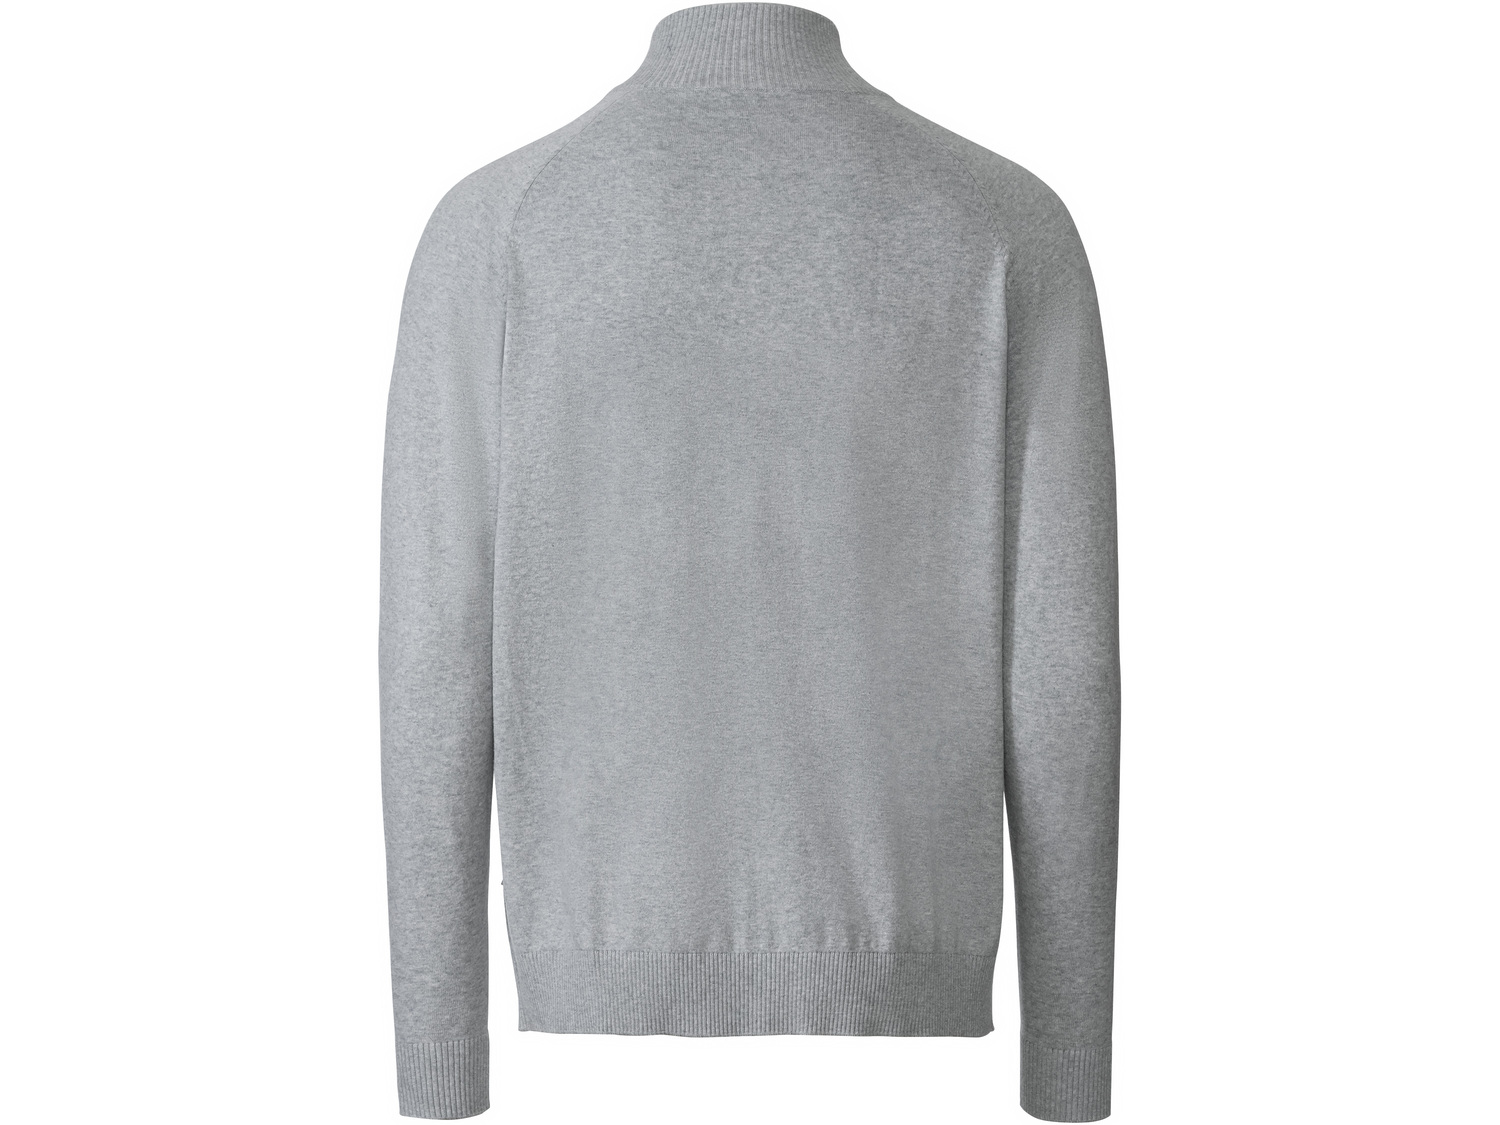 Sweter męski Livergy, cena 39,99 PLN 
- rozmiary: M-XL
- wysoka zawartość bawełny
Dostępne ...